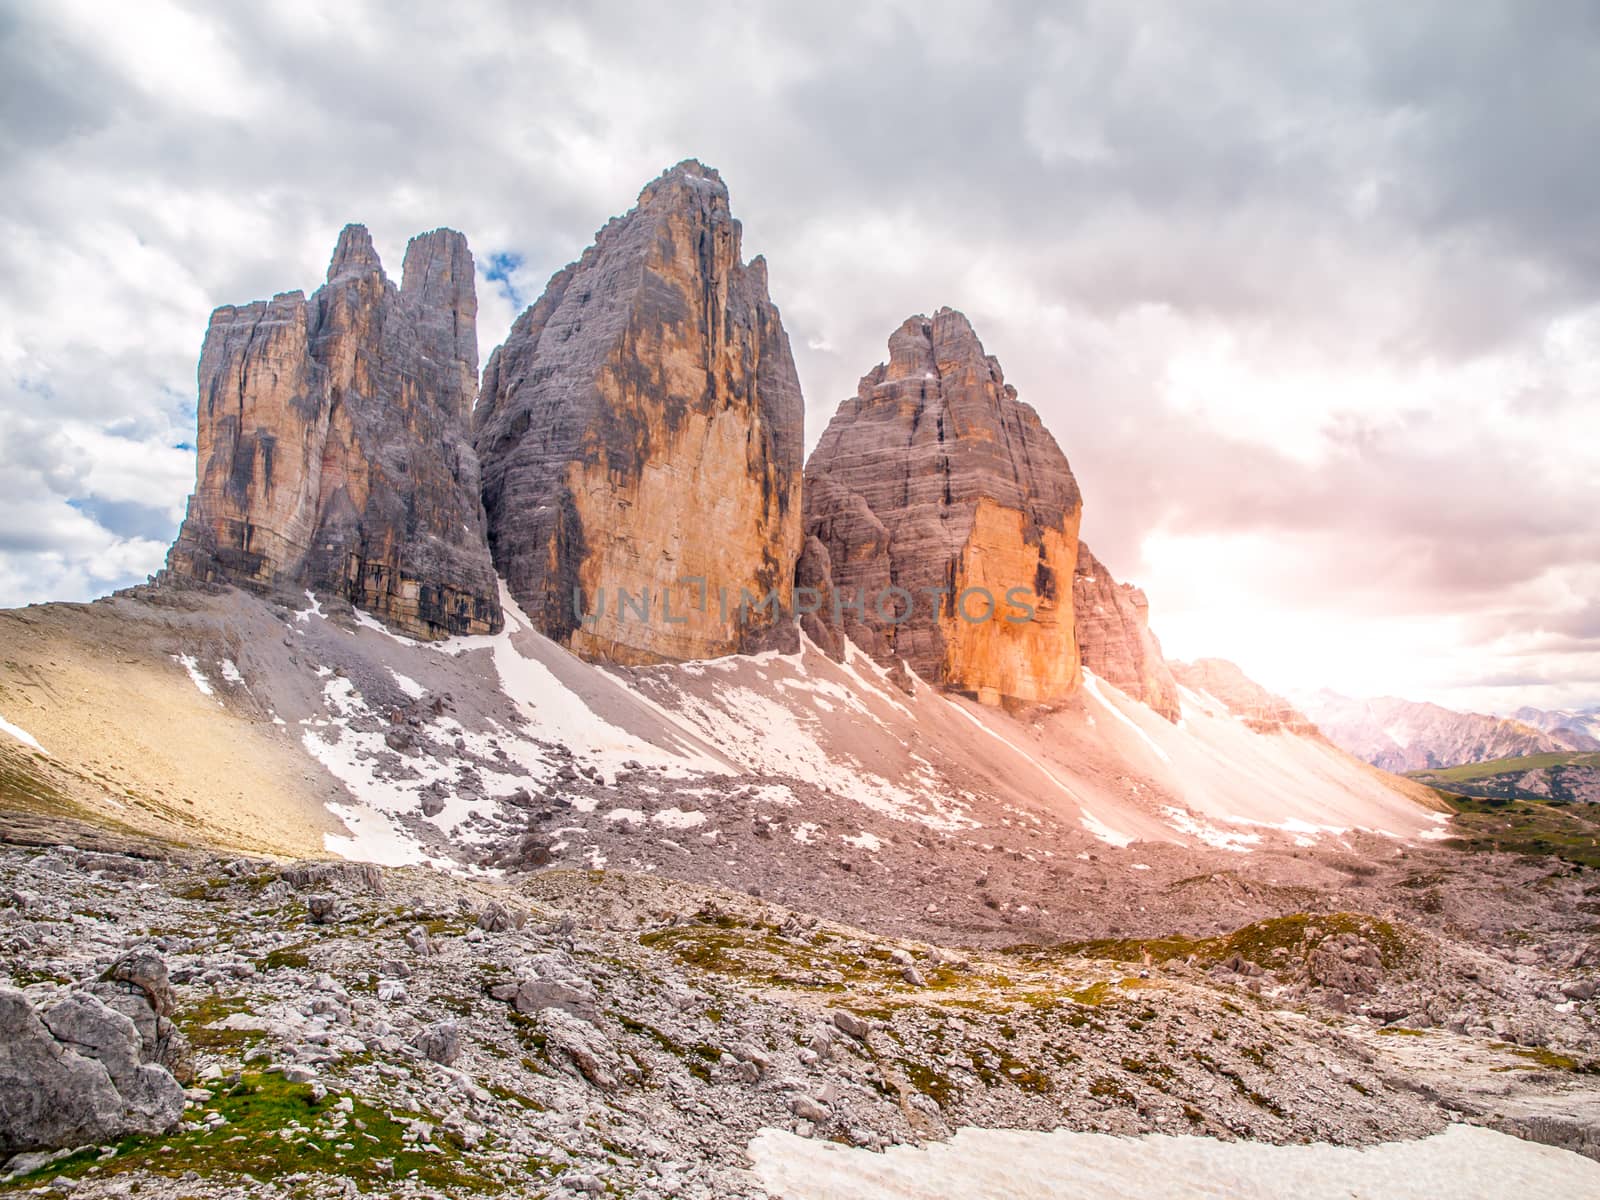 Tre Cime di Lavaredo, aka Drei Zinnen. North face of rock formation in Sexten Dolomites, Italy.